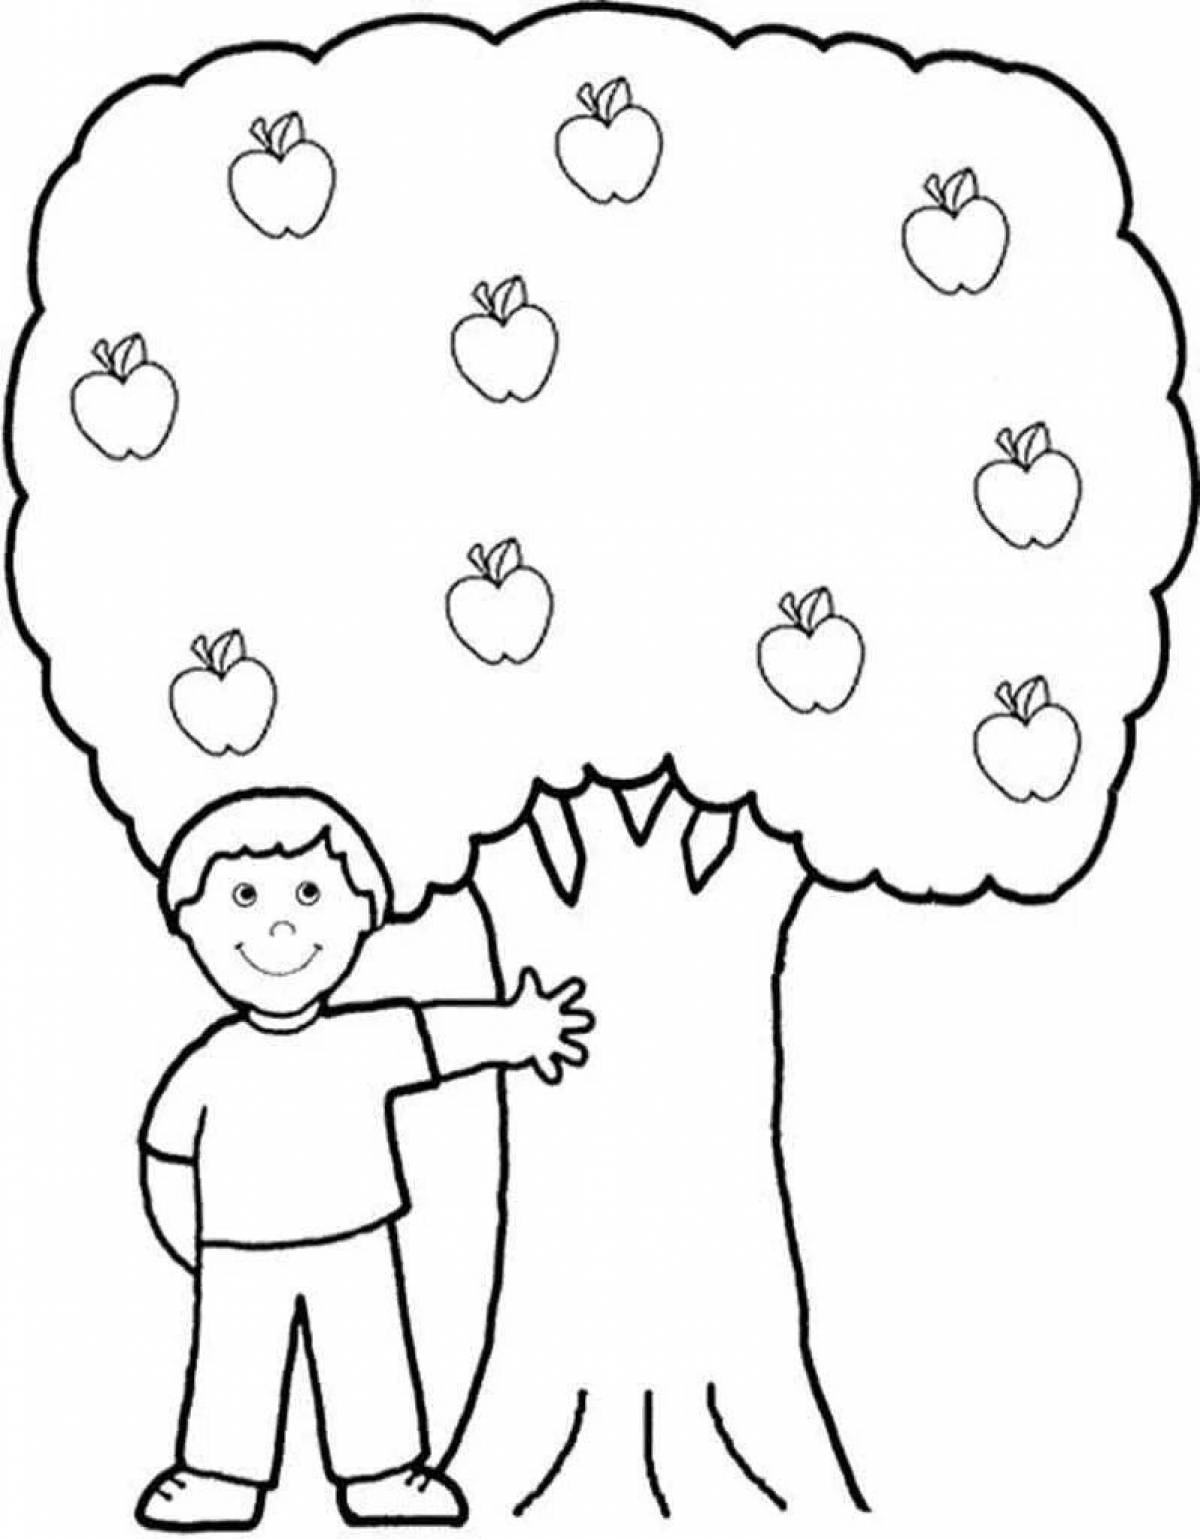 Apple tree #4